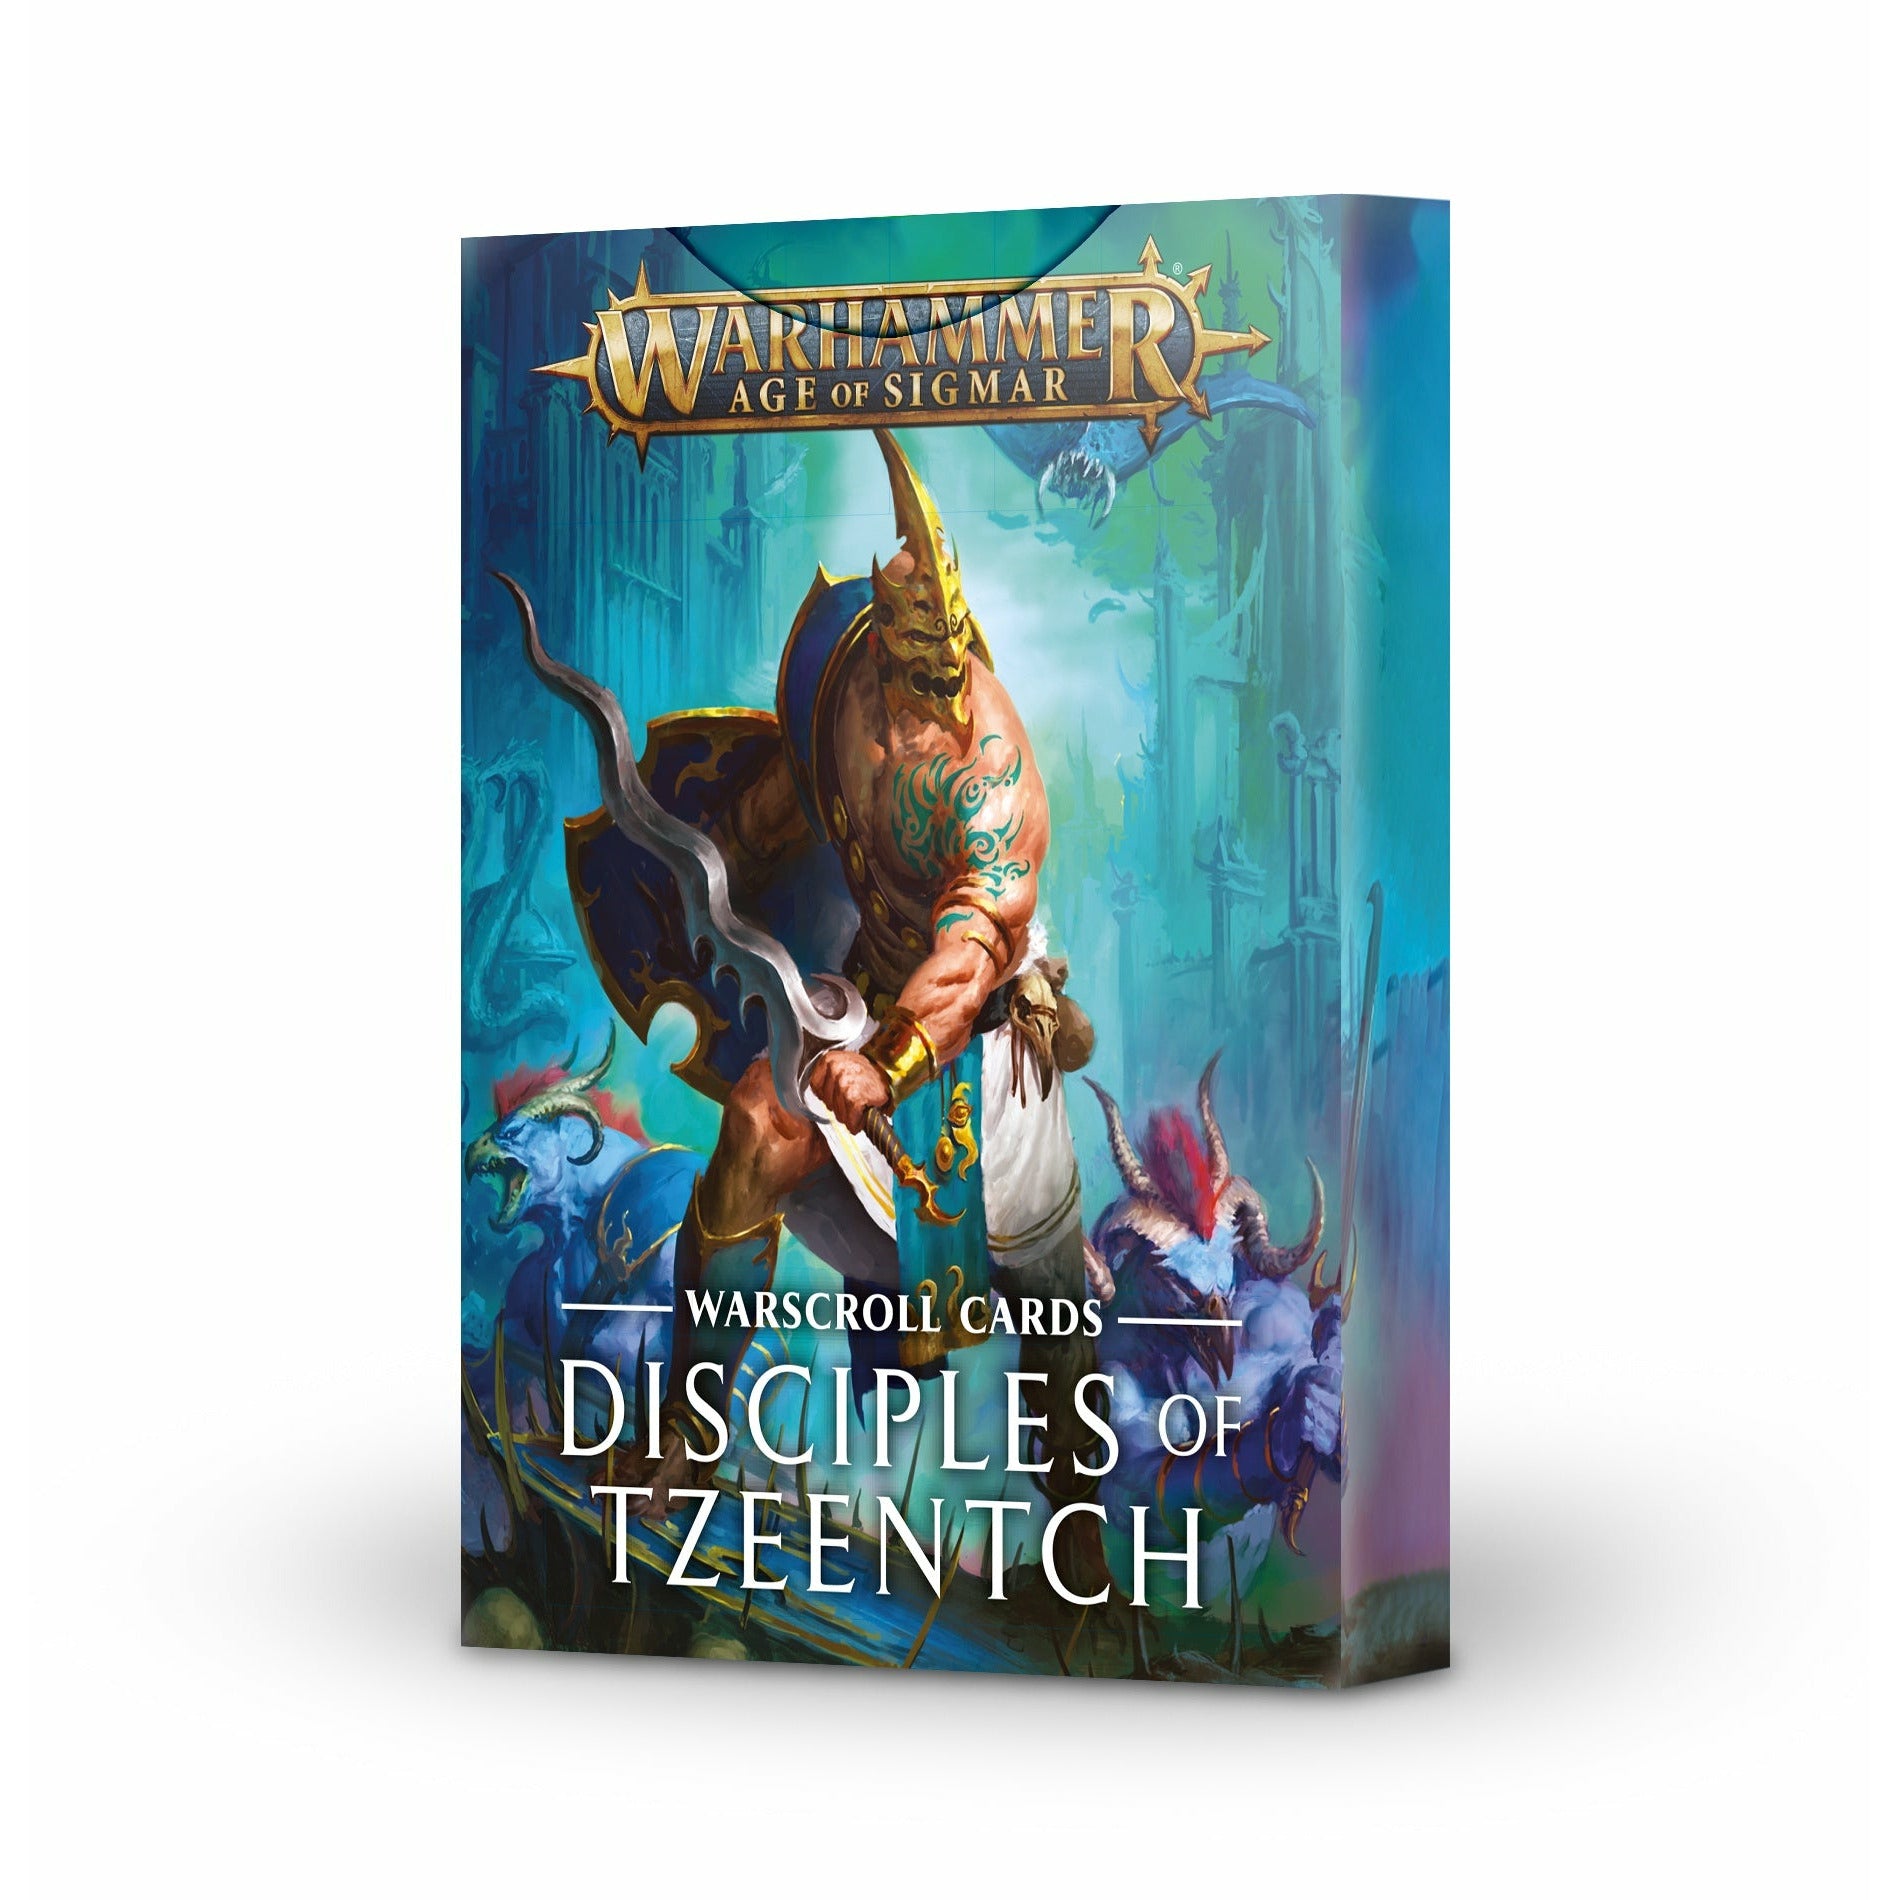 Warscroll Cards: Disciples of Tzeentch